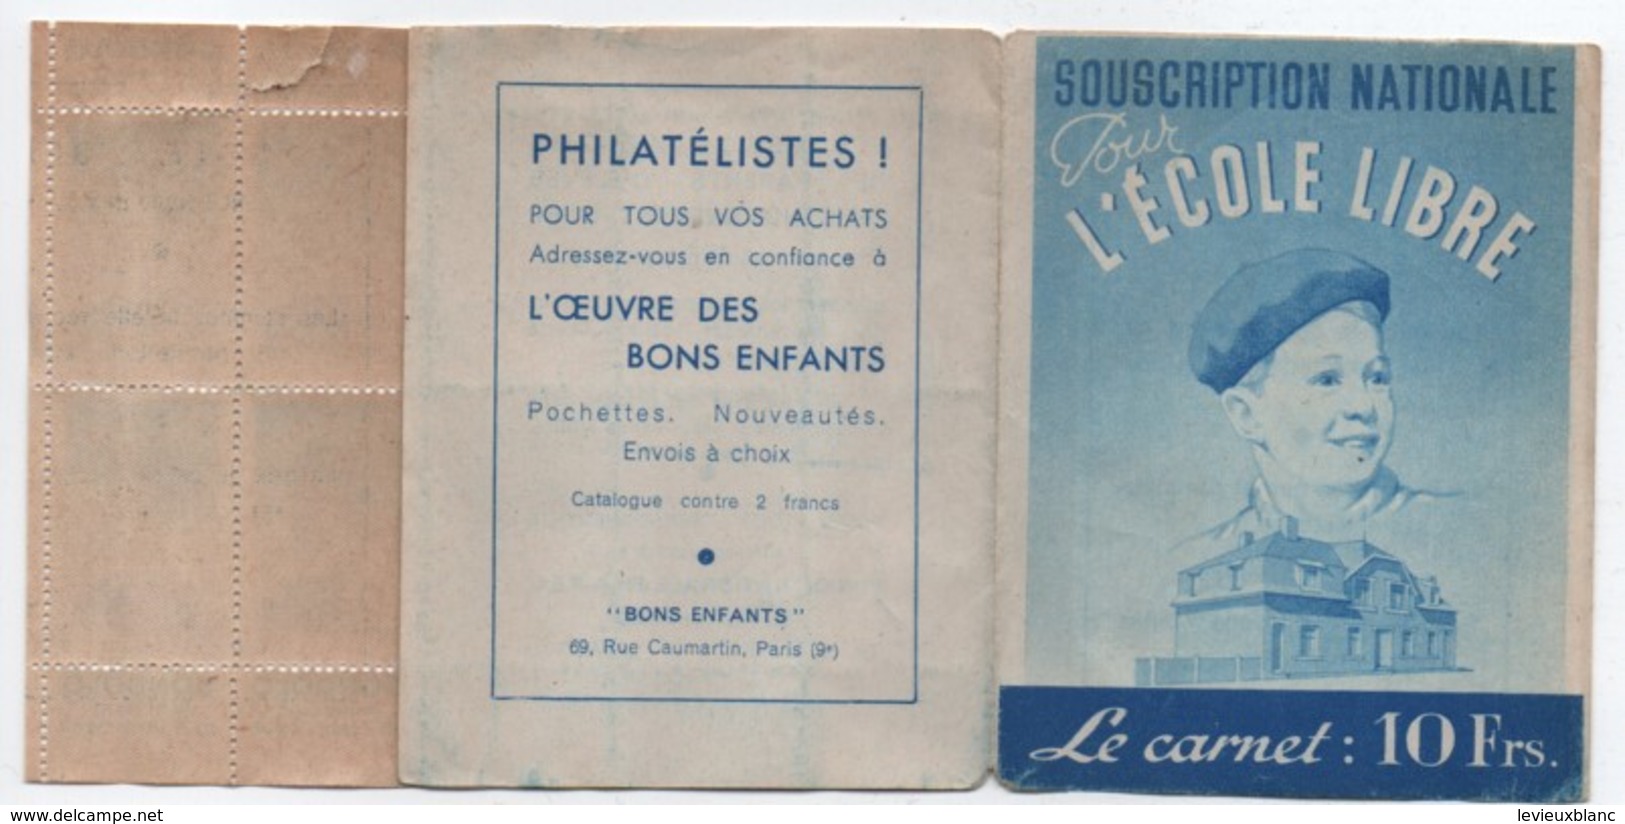 Ecole/Souscription Nationale Pour L'Ecole Libre/Le Carnet De Timbres 10 Frs/APEL/ Vers 1940 - 1950    CAH185 - Diplômes & Bulletins Scolaires